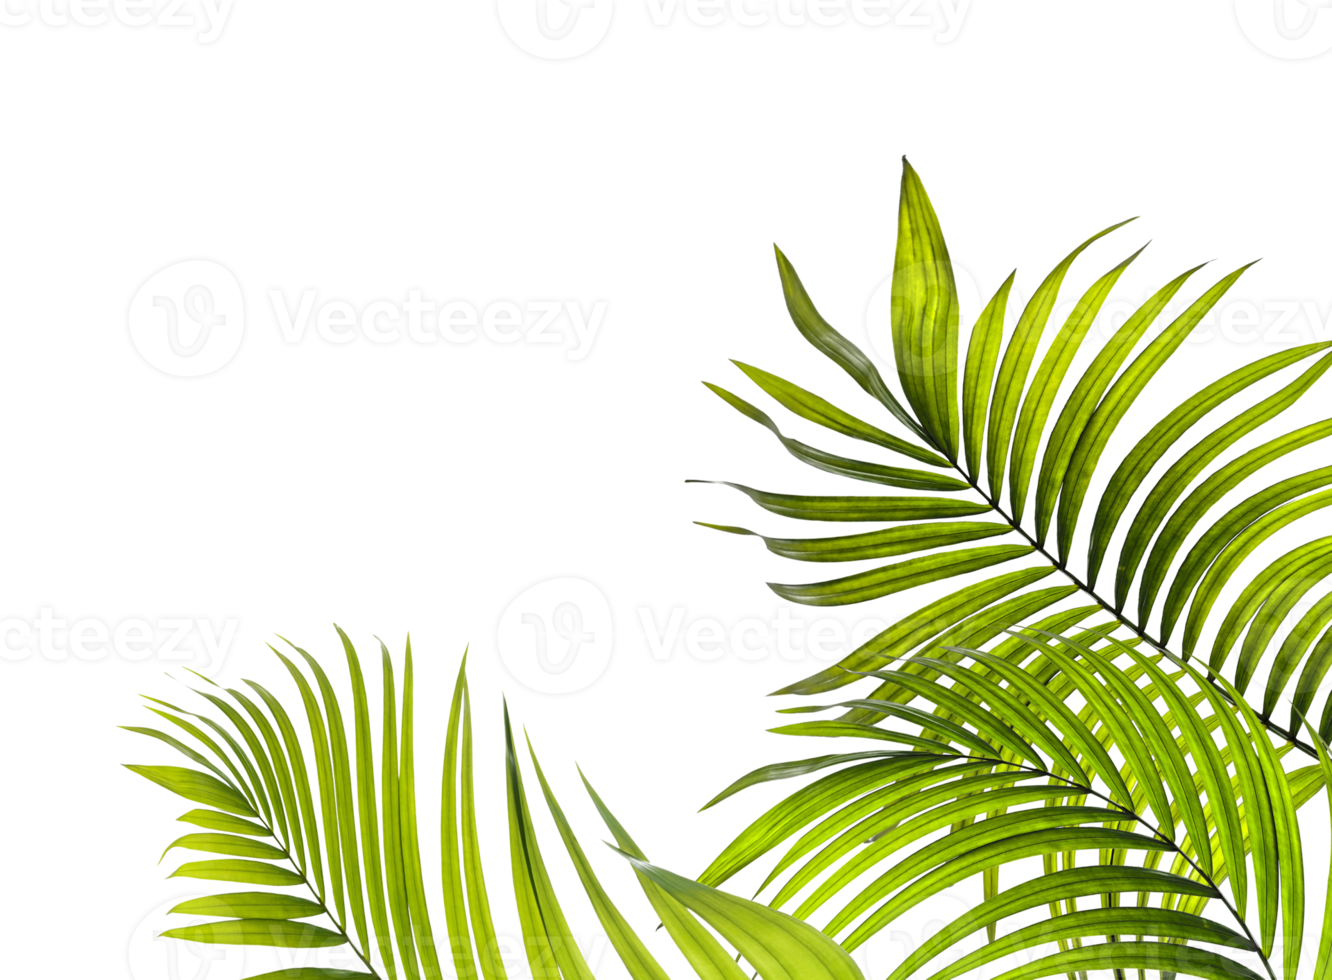 Thích khung cảnh nhiệt đới, bạn sẽ thích hình ảnh Green Leaf Palm Tree PNG với chi tiết lá cây xanh tươi, tạo cảm giác mát mẻ, sảng khoái.